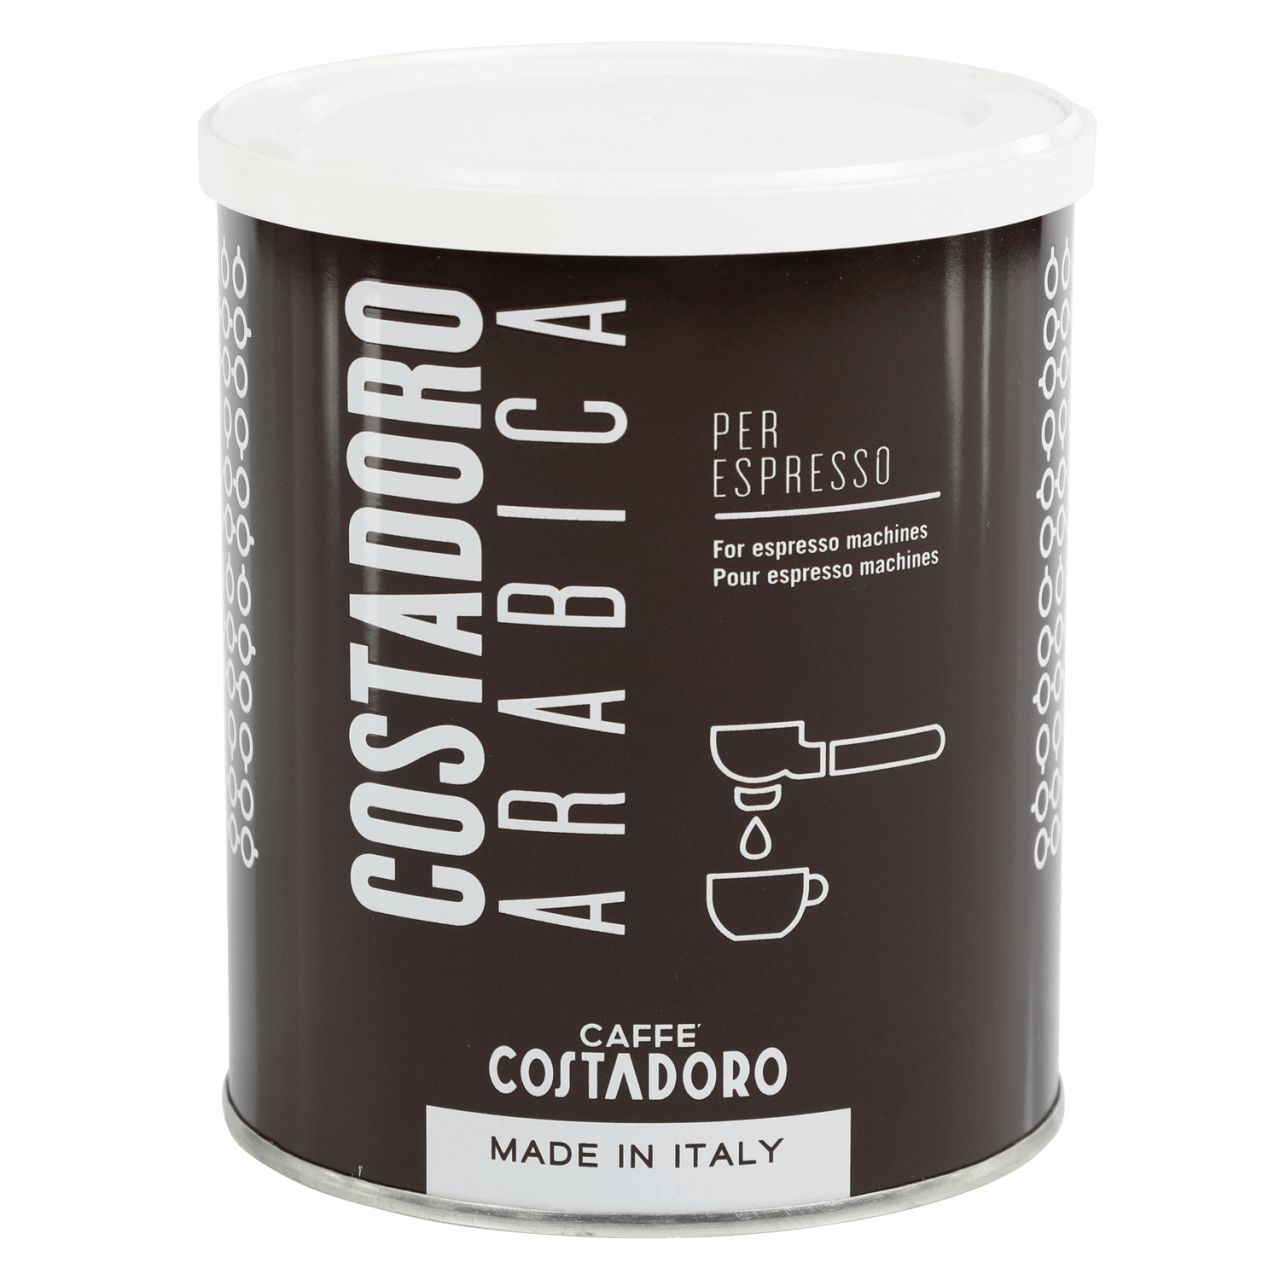 Costadoro Espresso 250g gemahlen